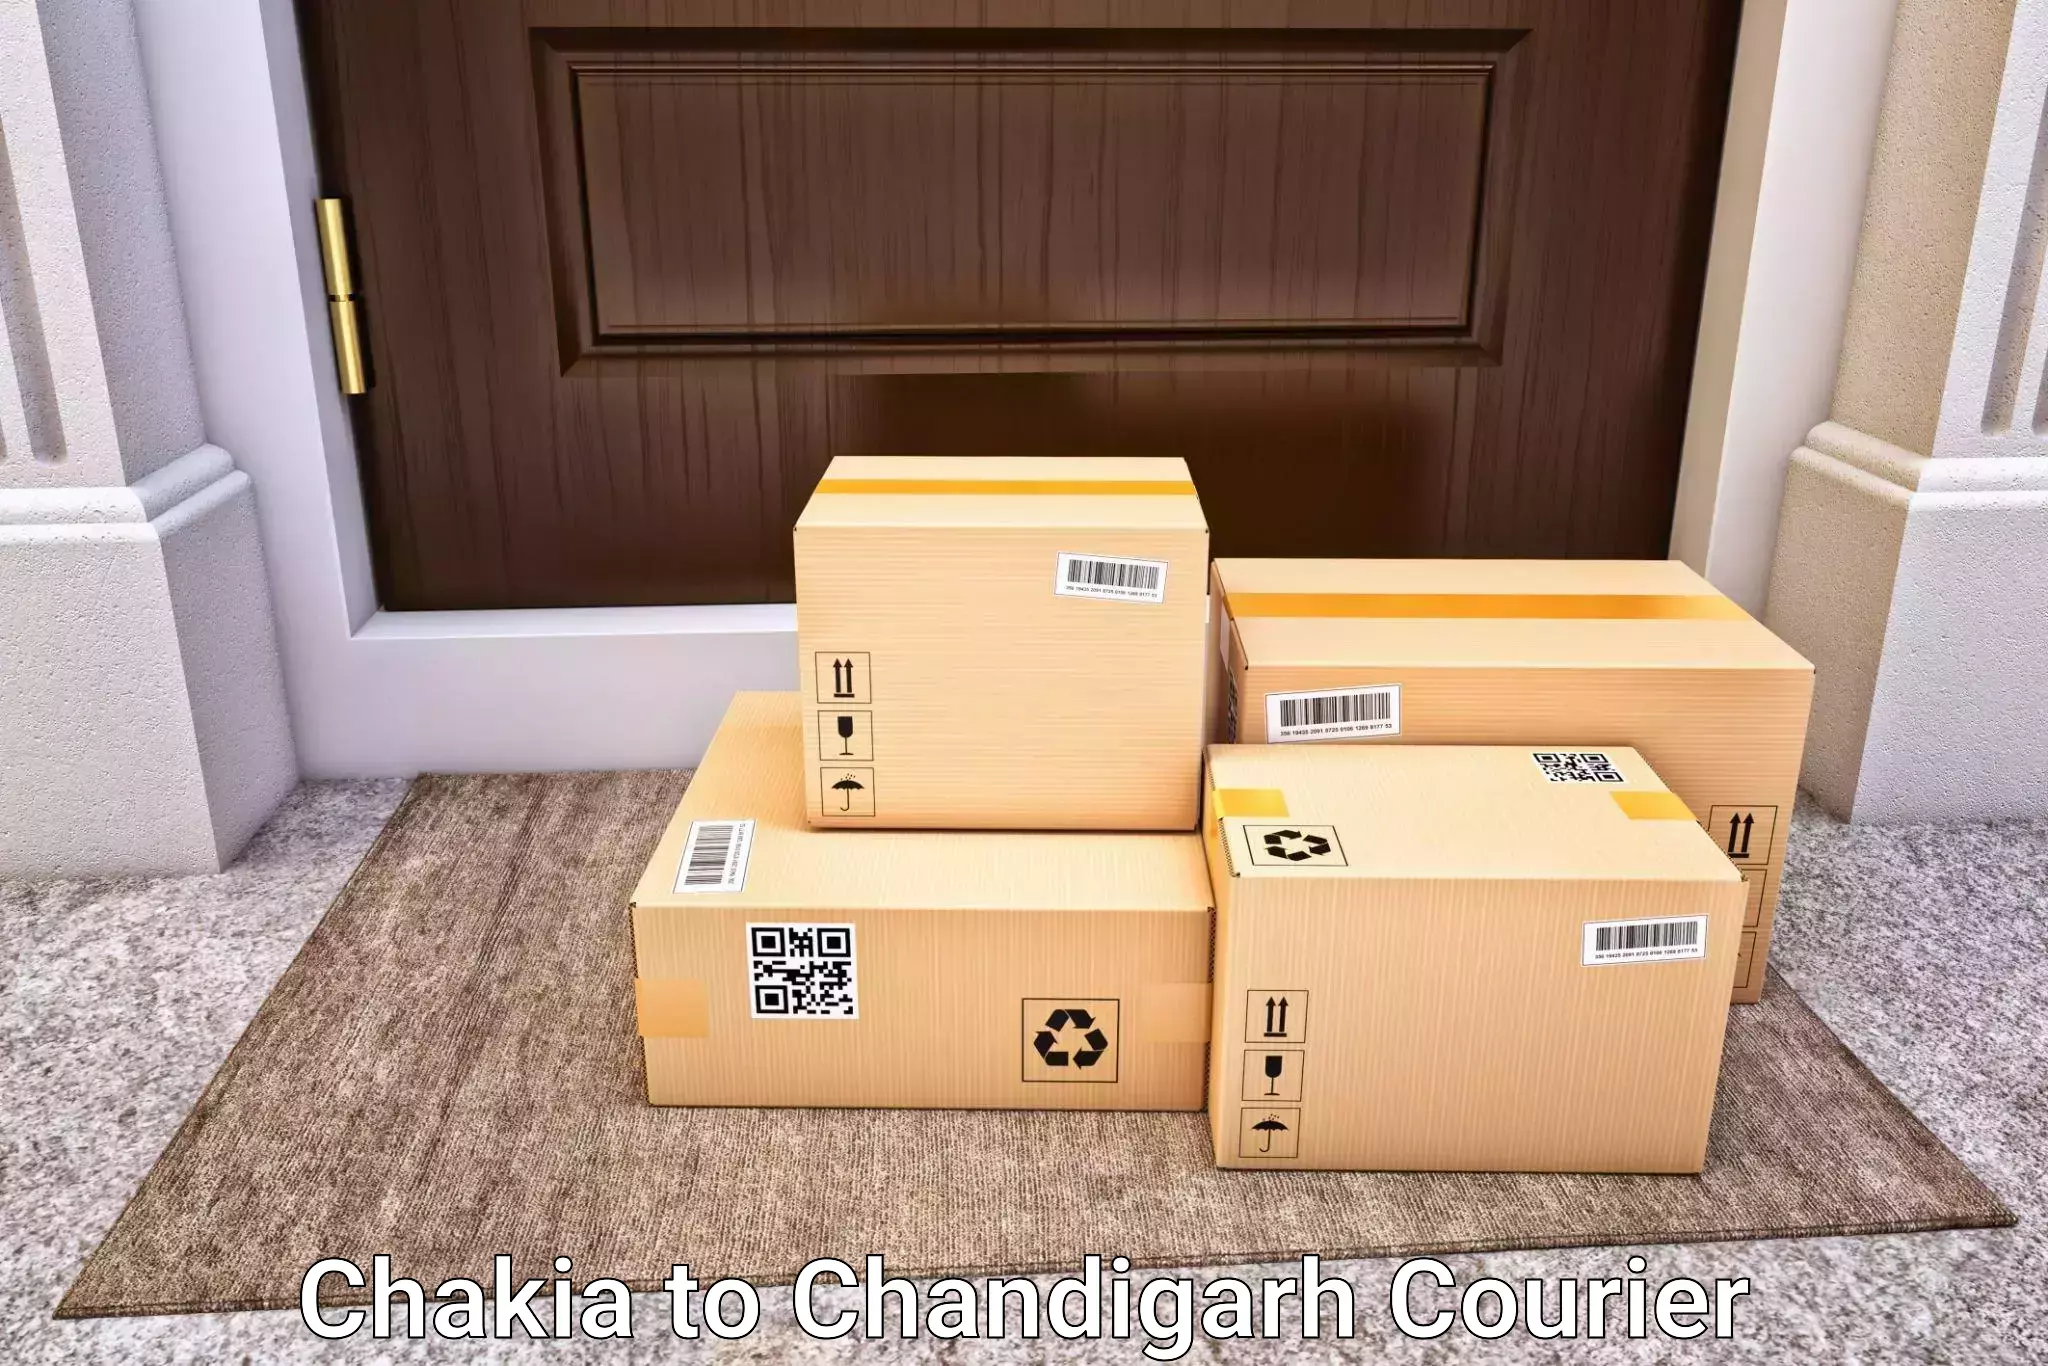 Quick baggage pickup Chakia to Chandigarh